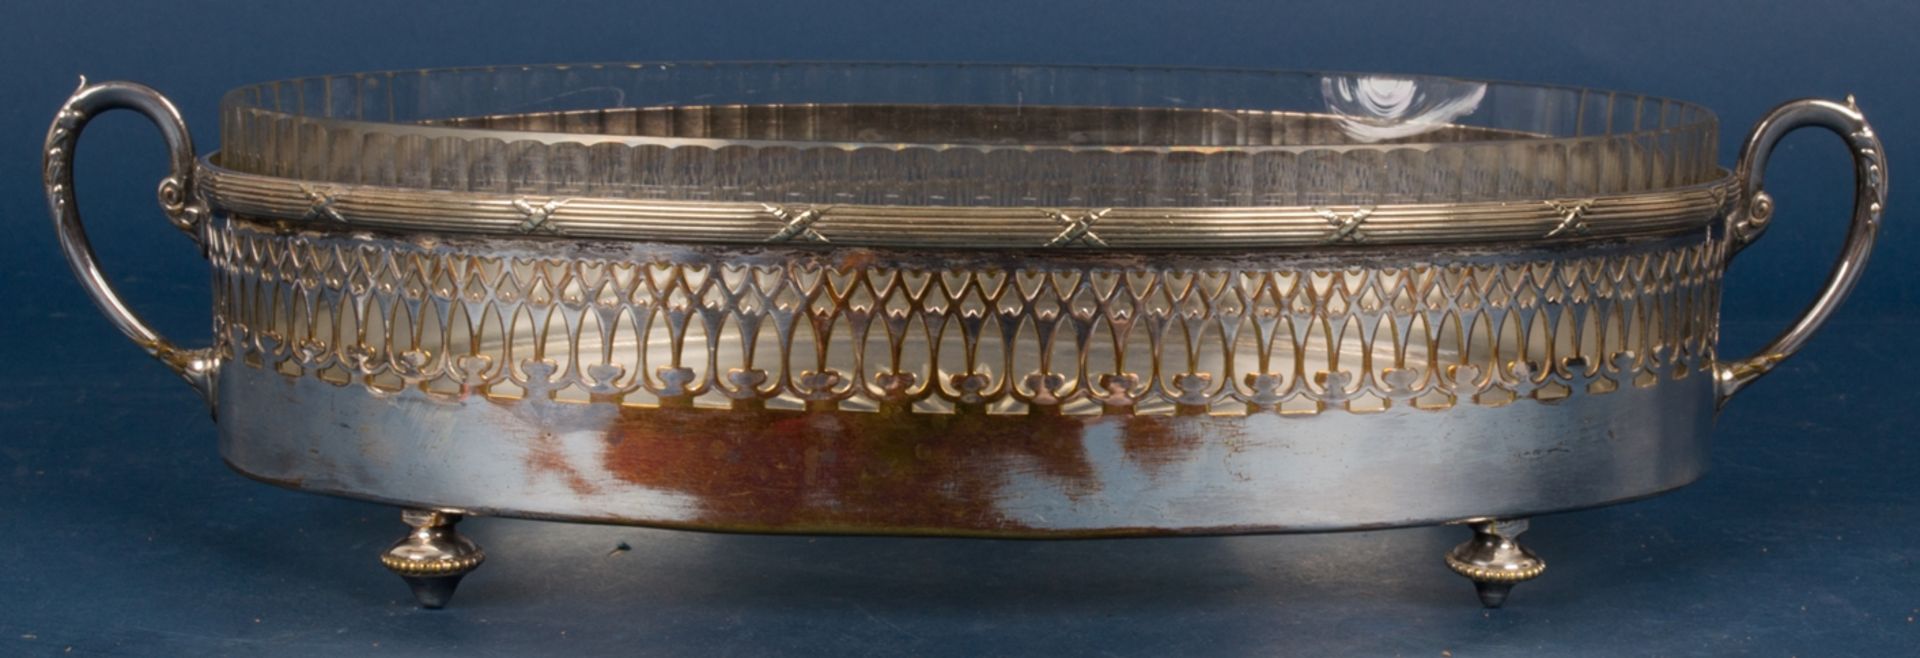 Ovale Jardiniere mit orig. Glaseinsatz (gechipt), Versilberung stellenweise verputzt. Länge ca. 37